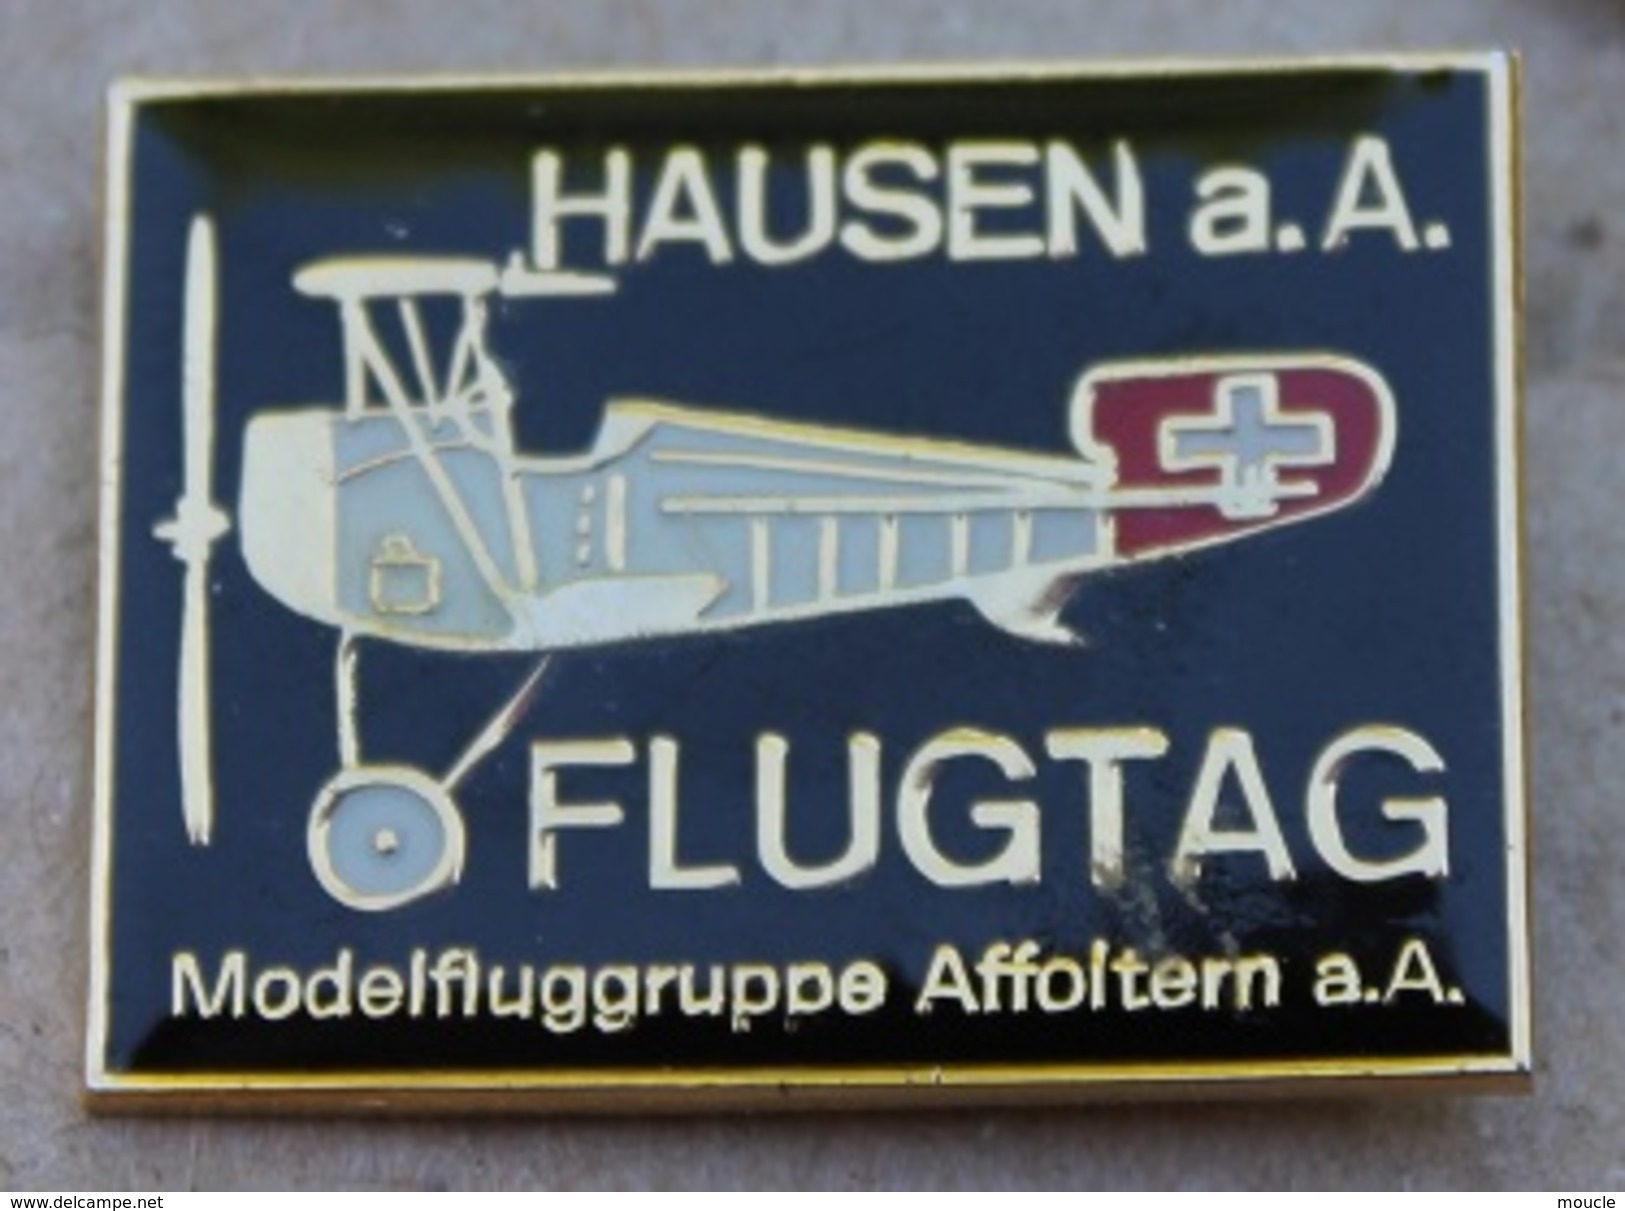 AVION - HAUSEN A.A FLUGTAG - MODELFLUGGRUPPE AFFOLTERM A.A - SCHWEIZ - SUISSE -    (JAUNE) - Avions